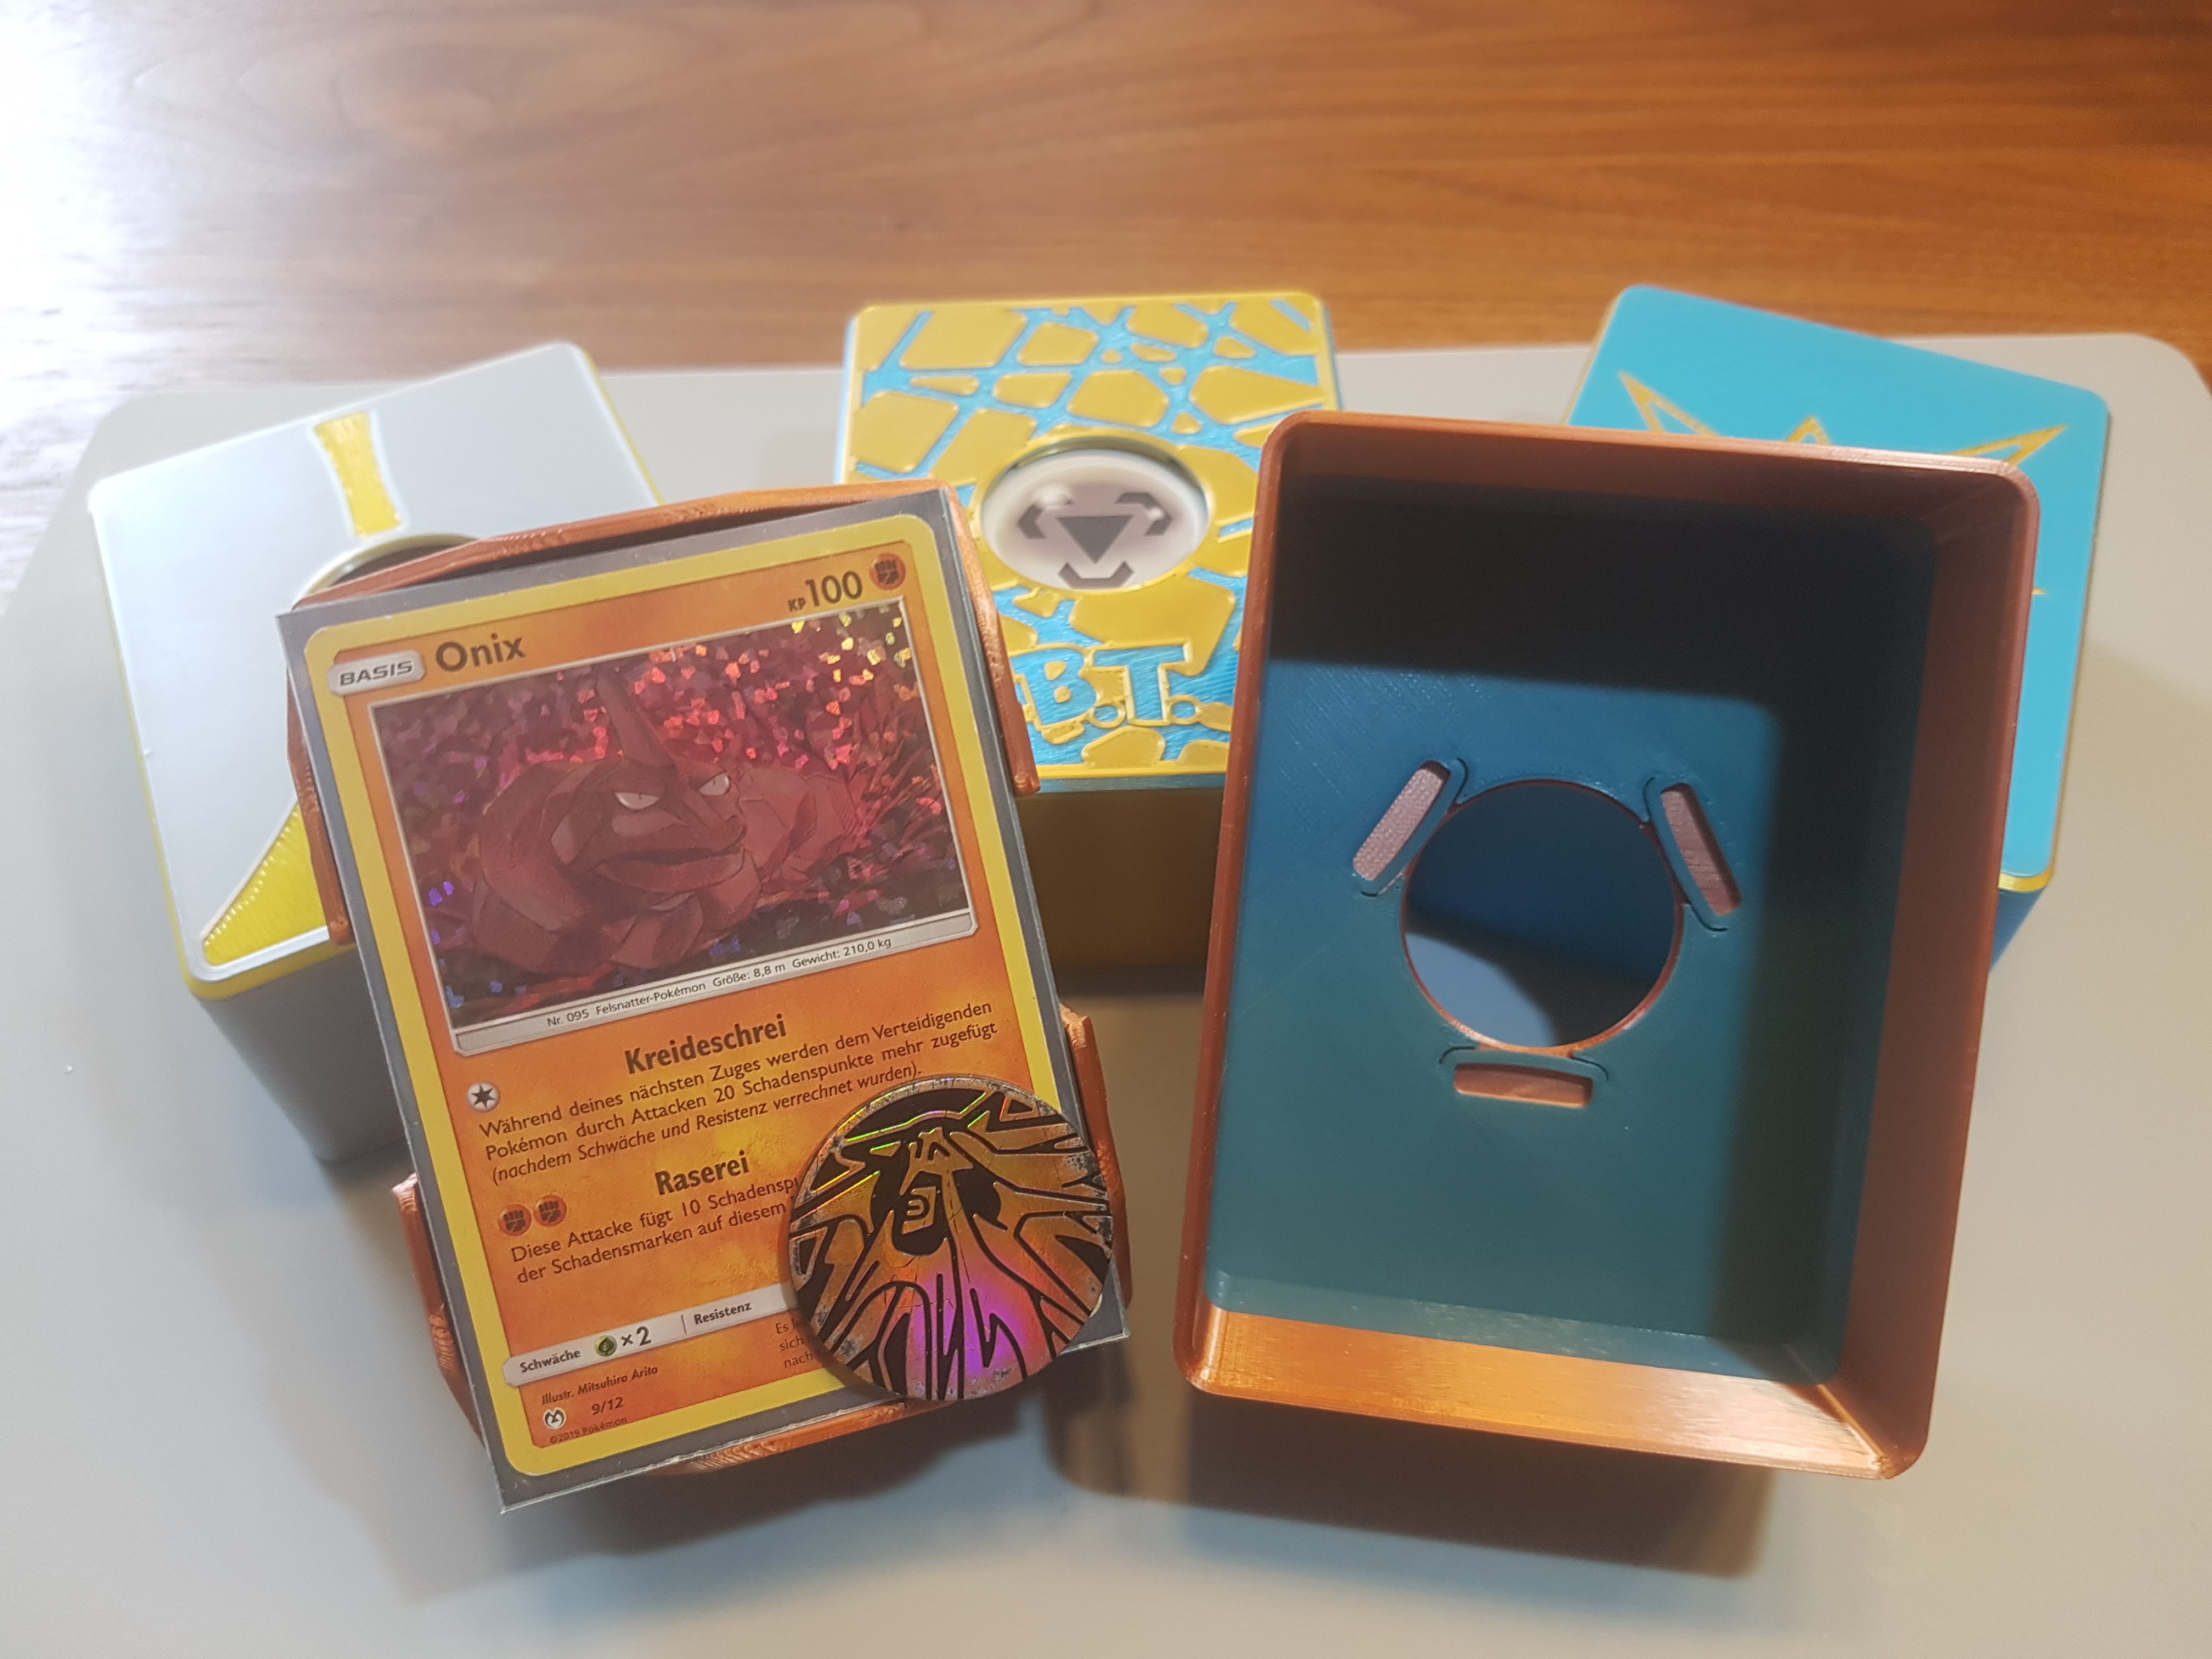 Pokémon Card Deoxys [Constructed Deck] with Sleeve Pokéka